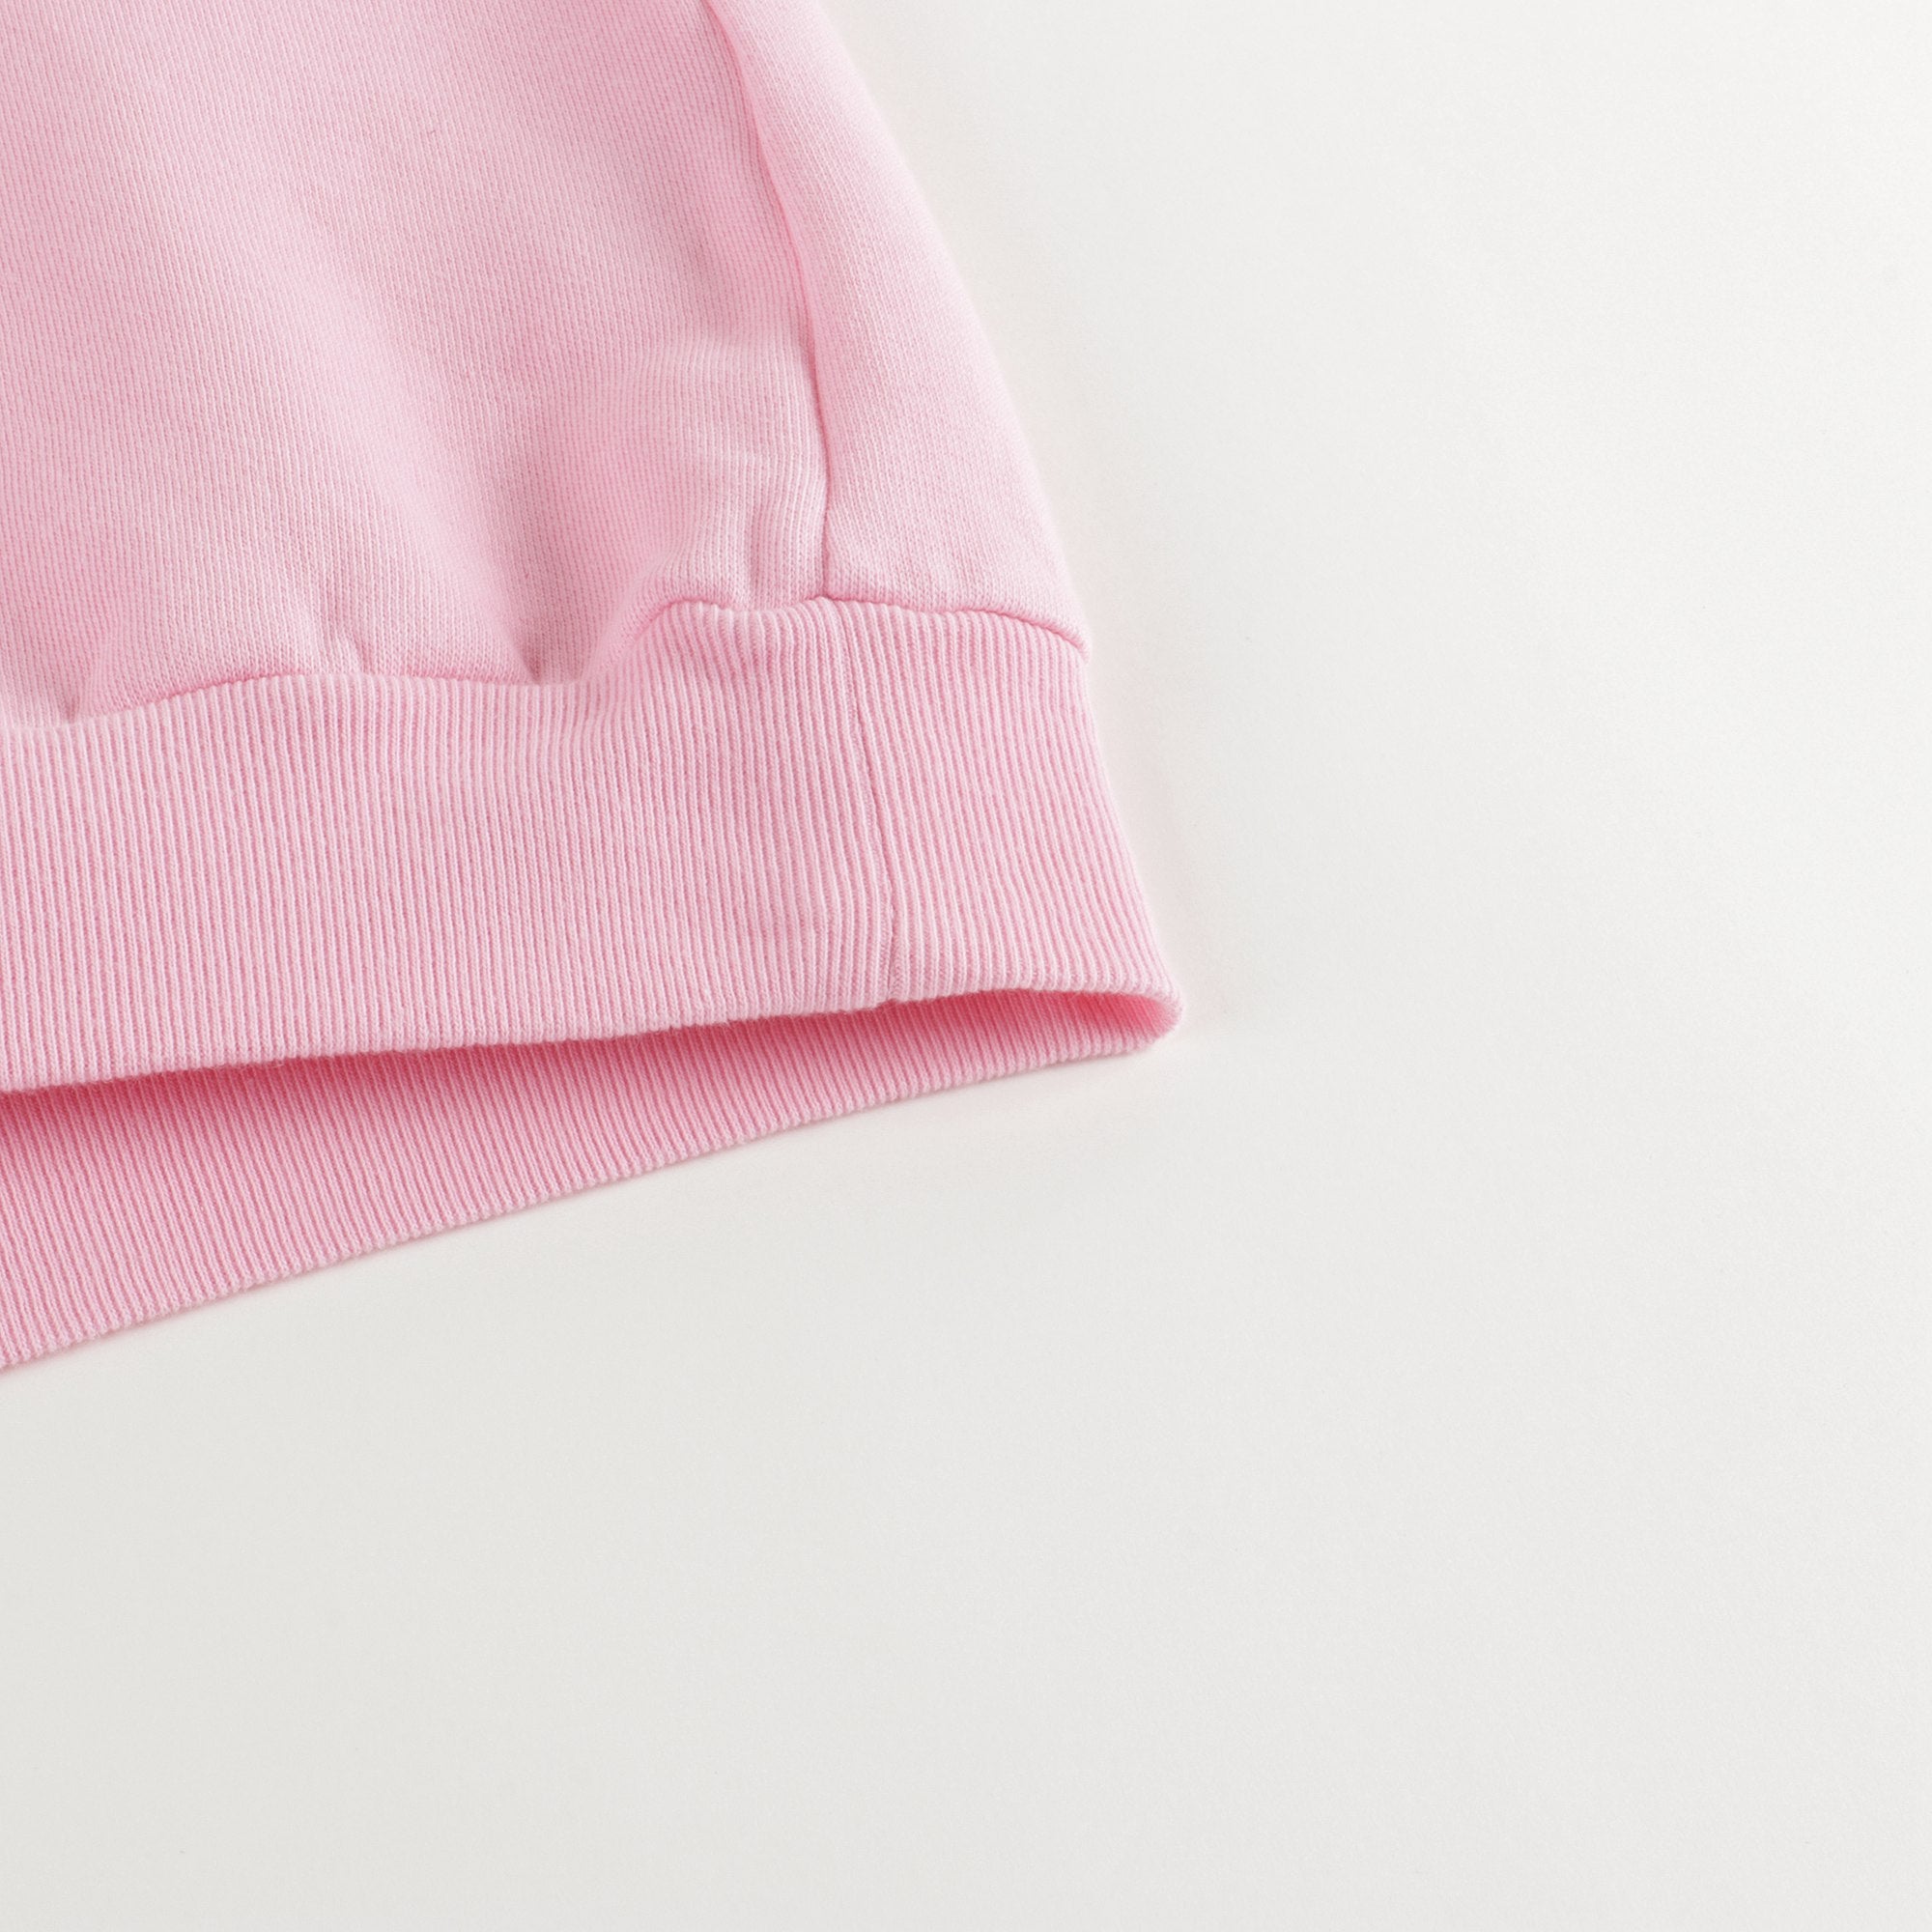 Boys & Girls Pink Languages Sweatshirt